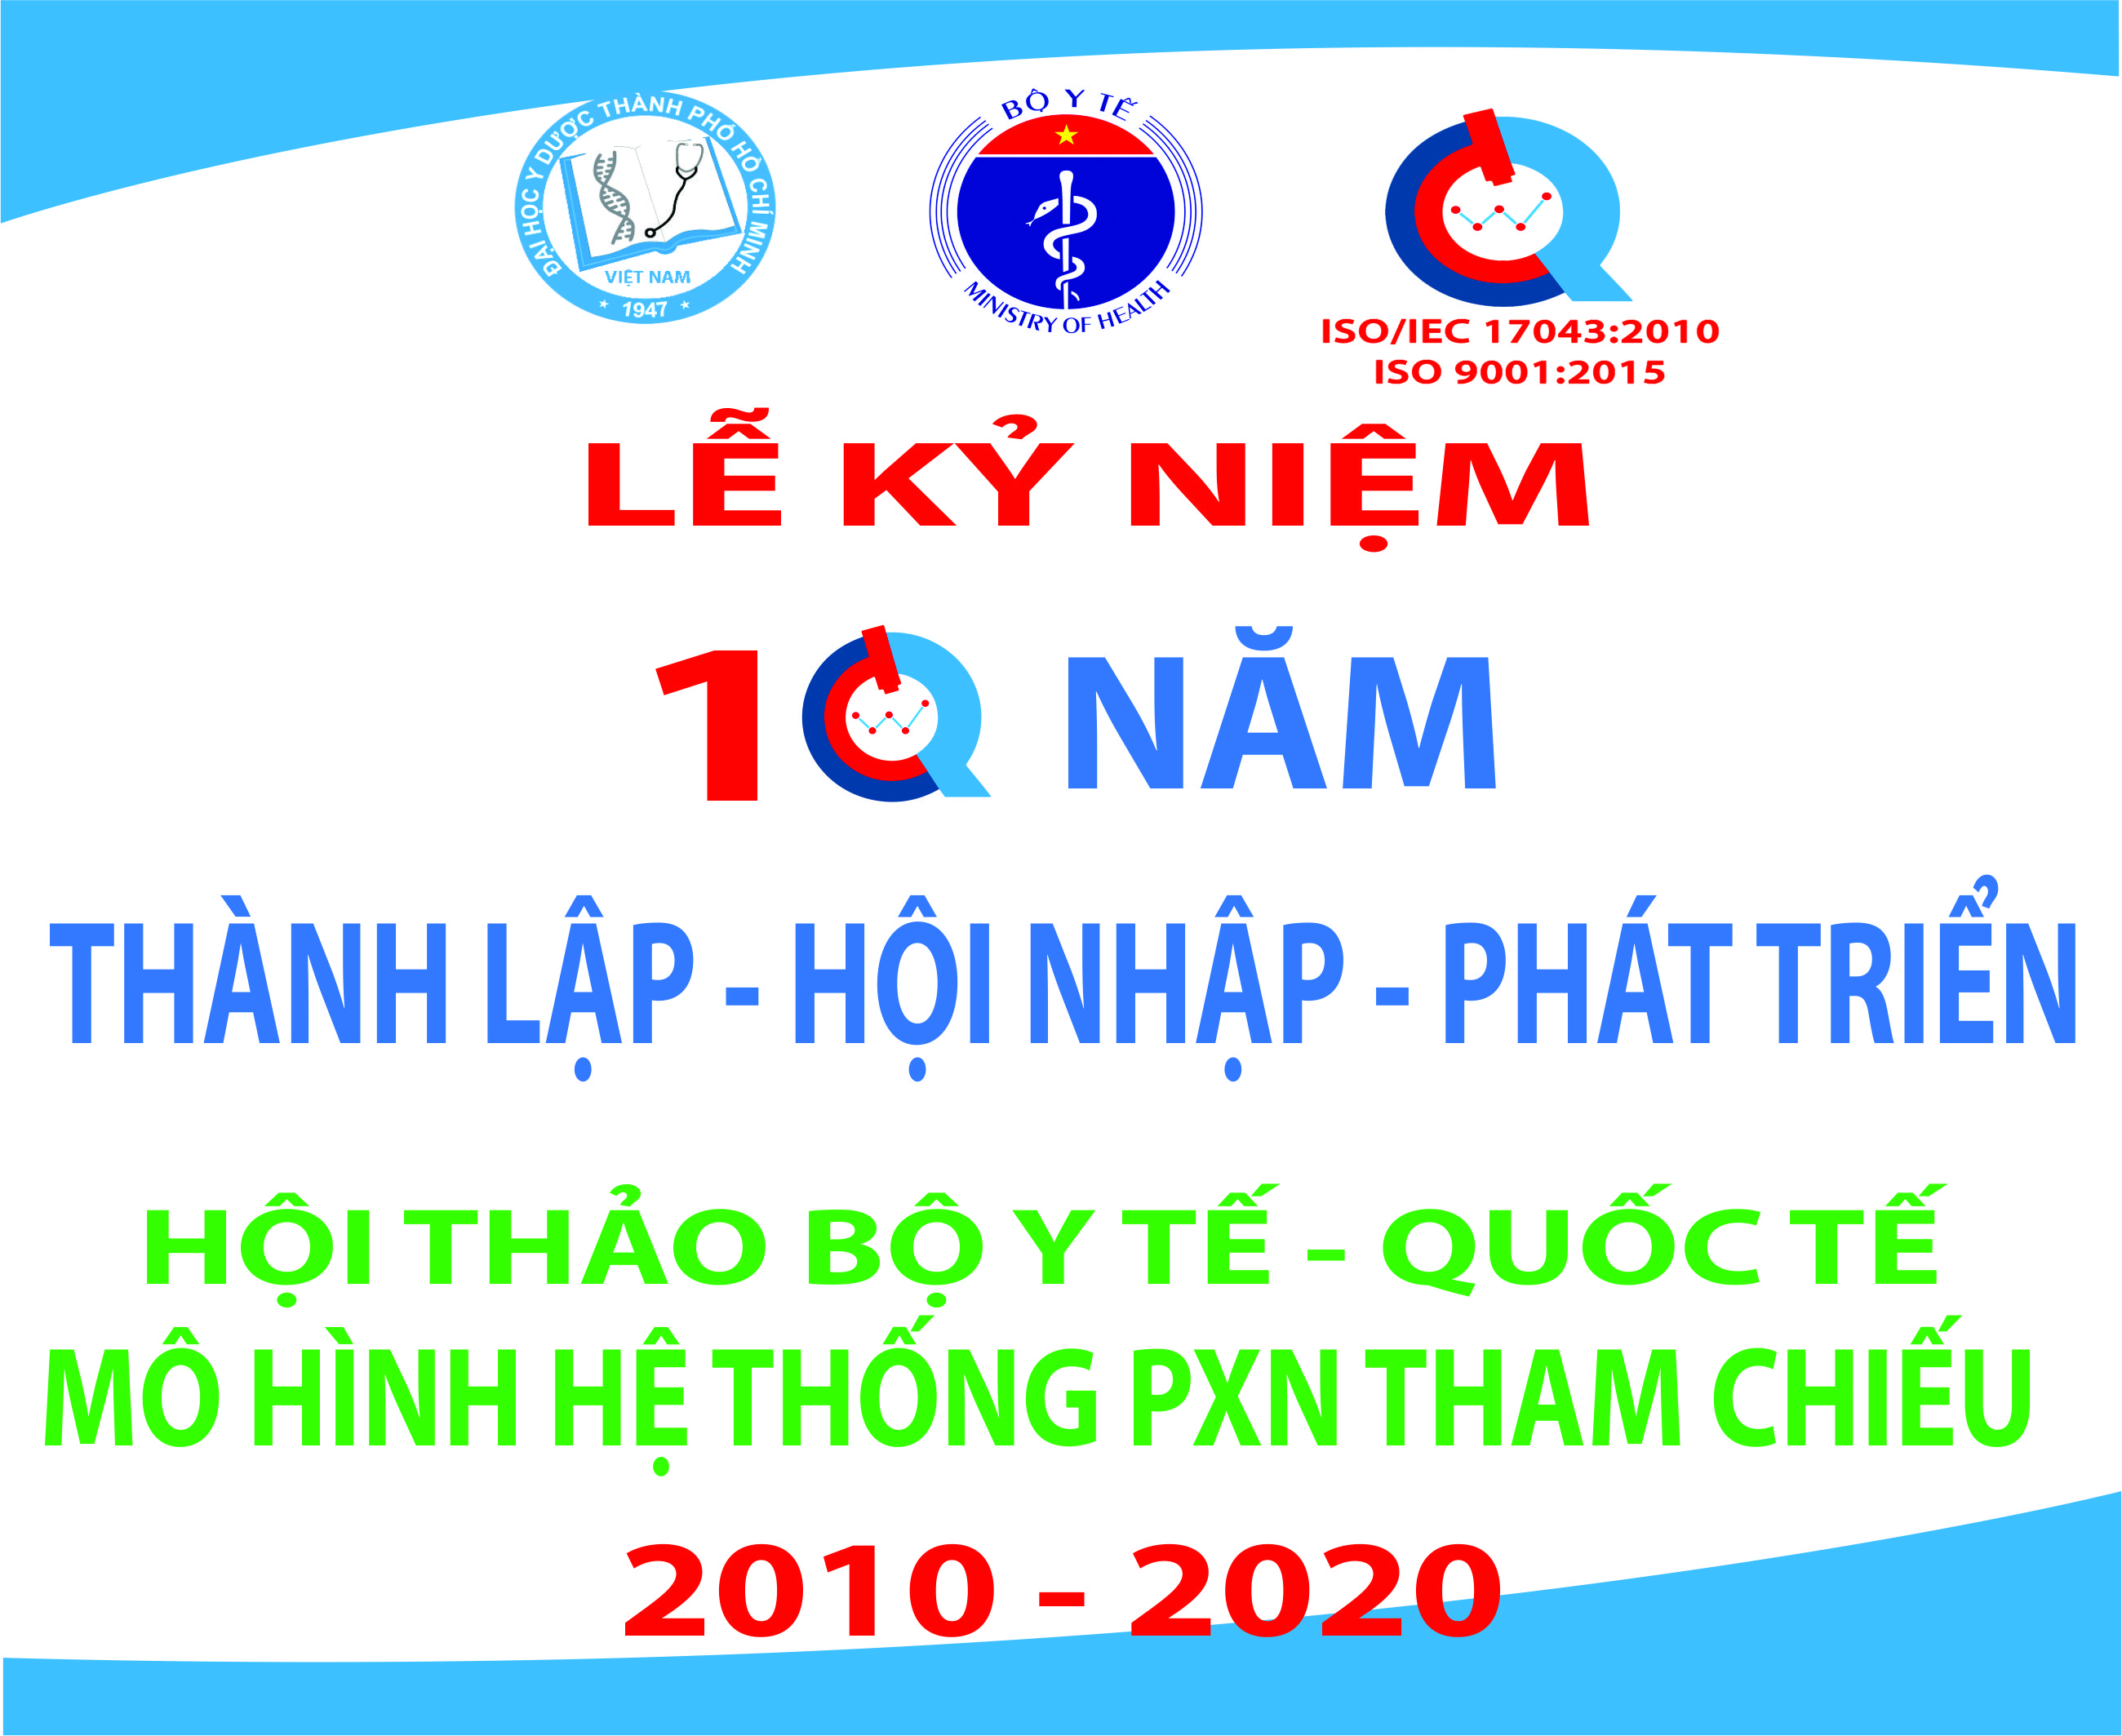 Việt Nam cần xây dựng phòng xét nghiệm tham chiếu - Kiểm chuẩn các xét nghiệm giúp xác định đúng người, đúng bệnh